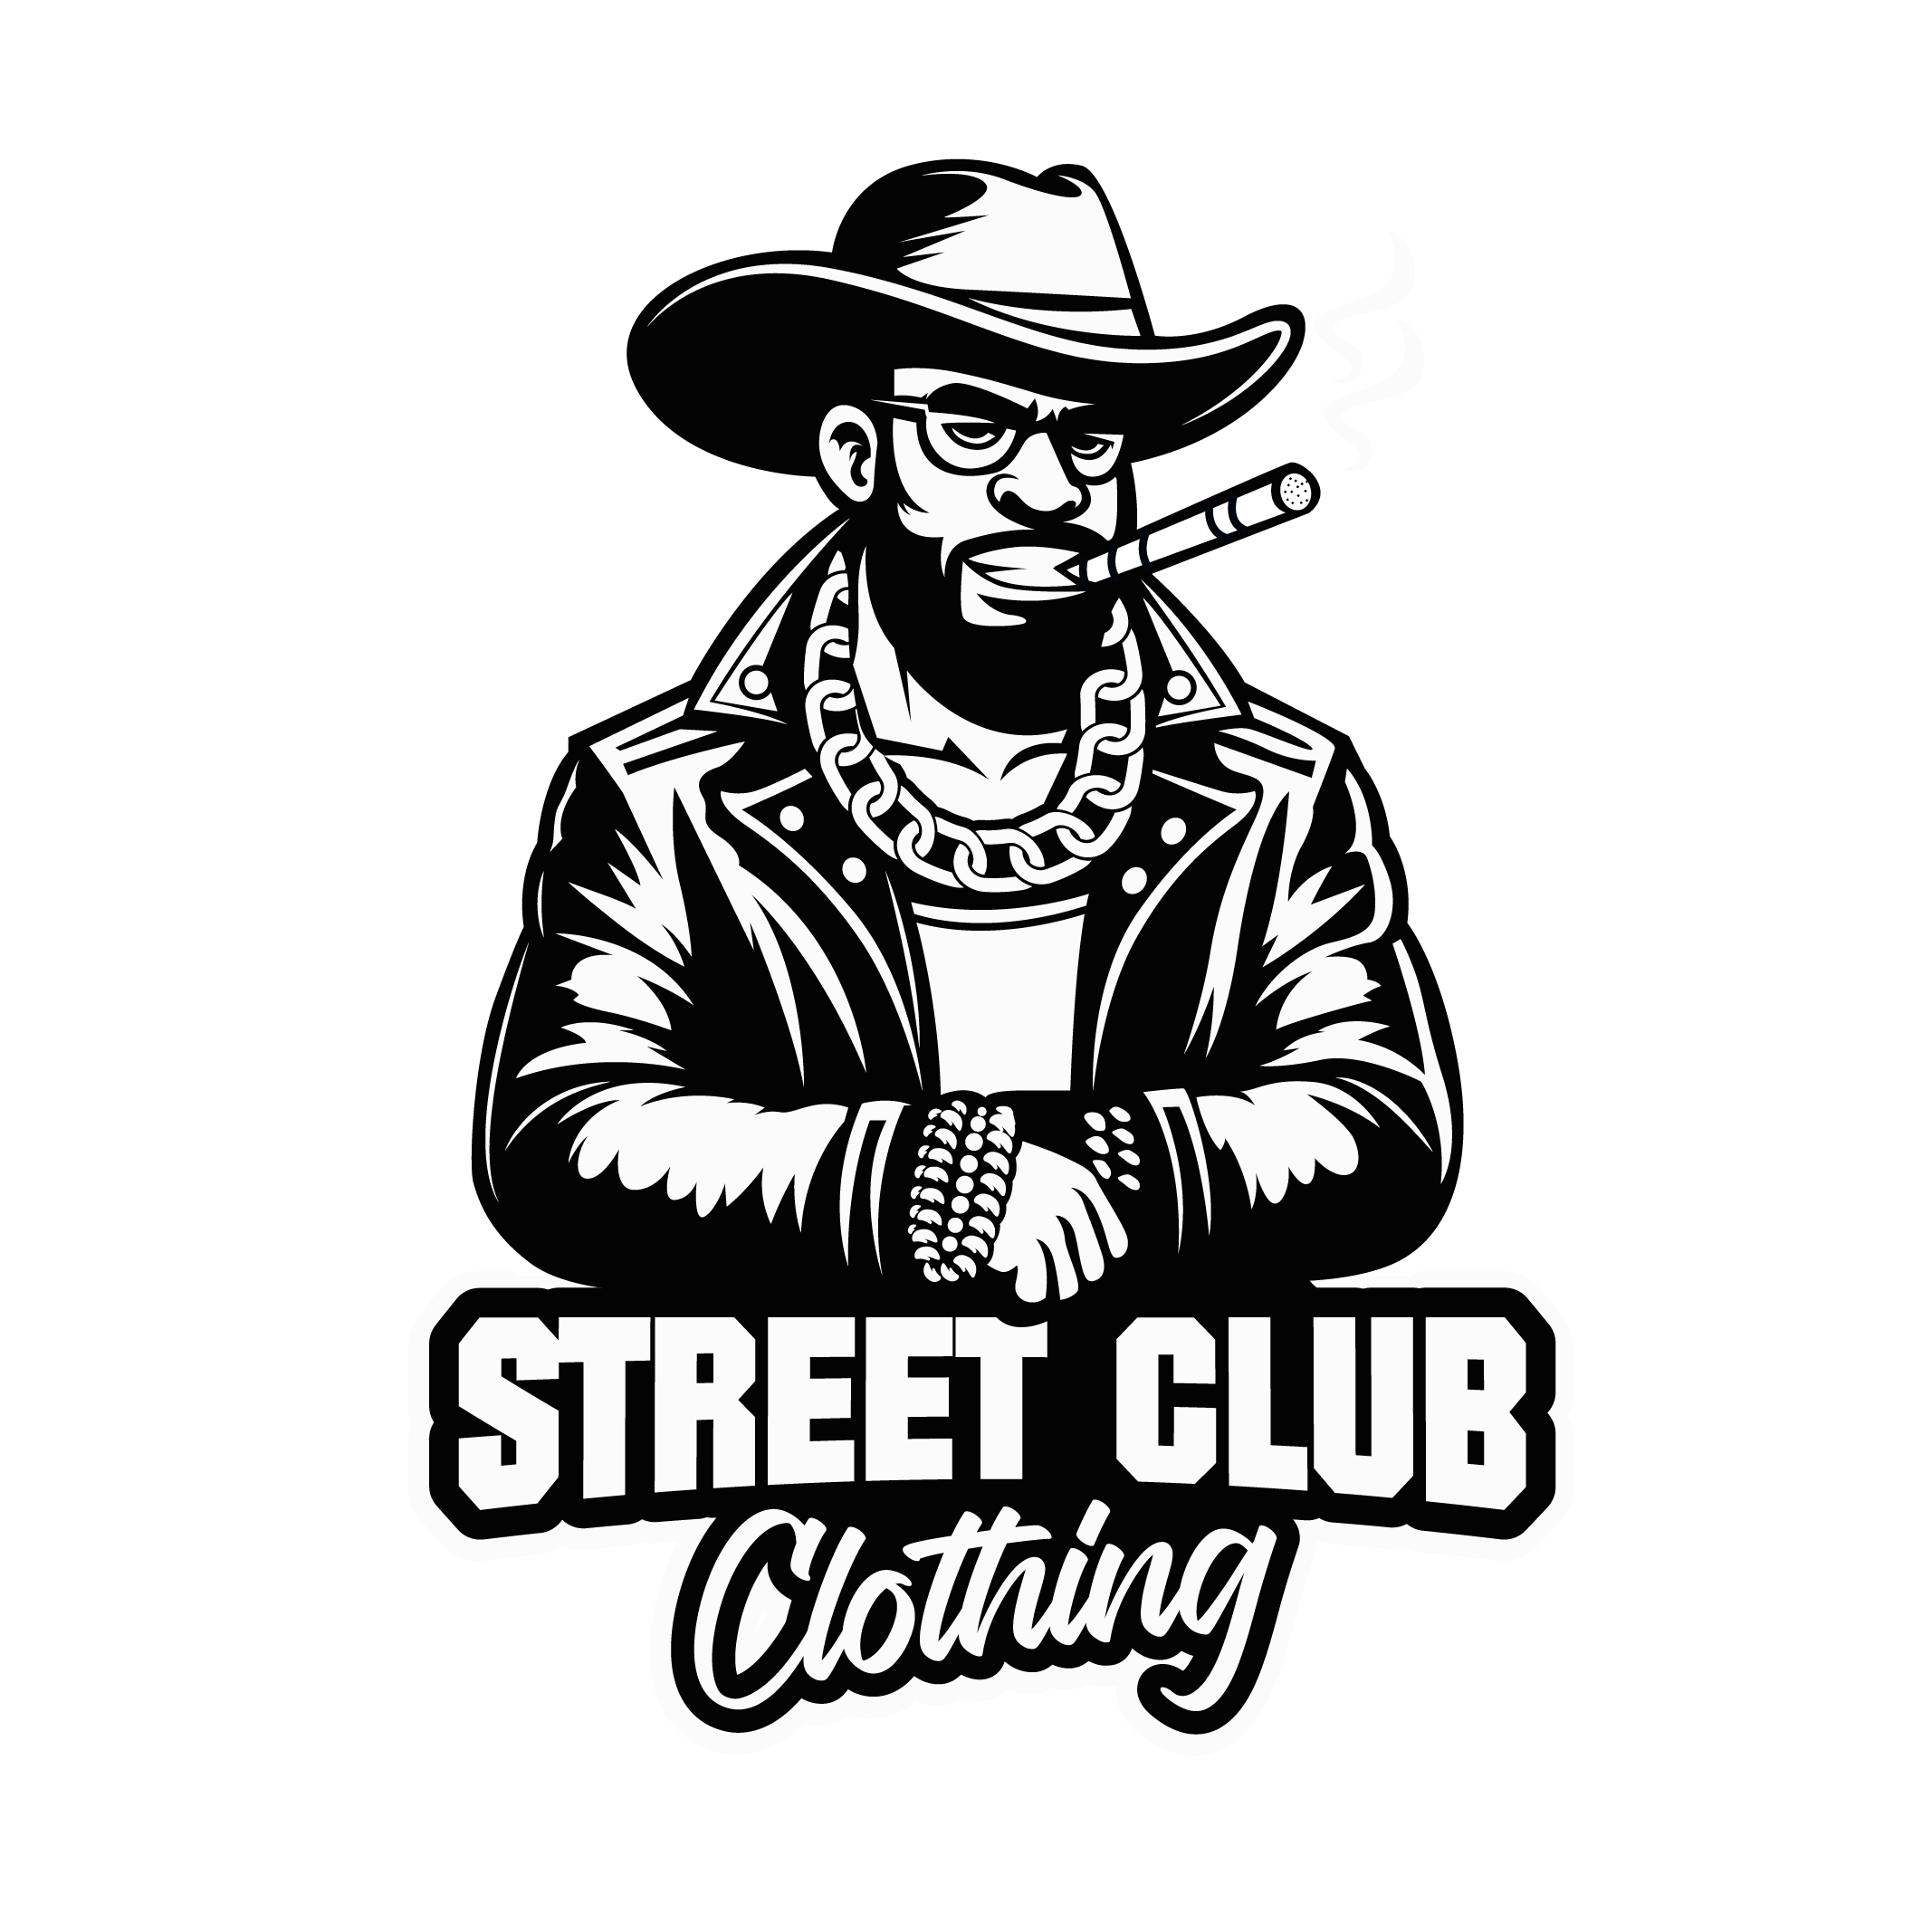 Street Club Clothing_files1-02 (1)